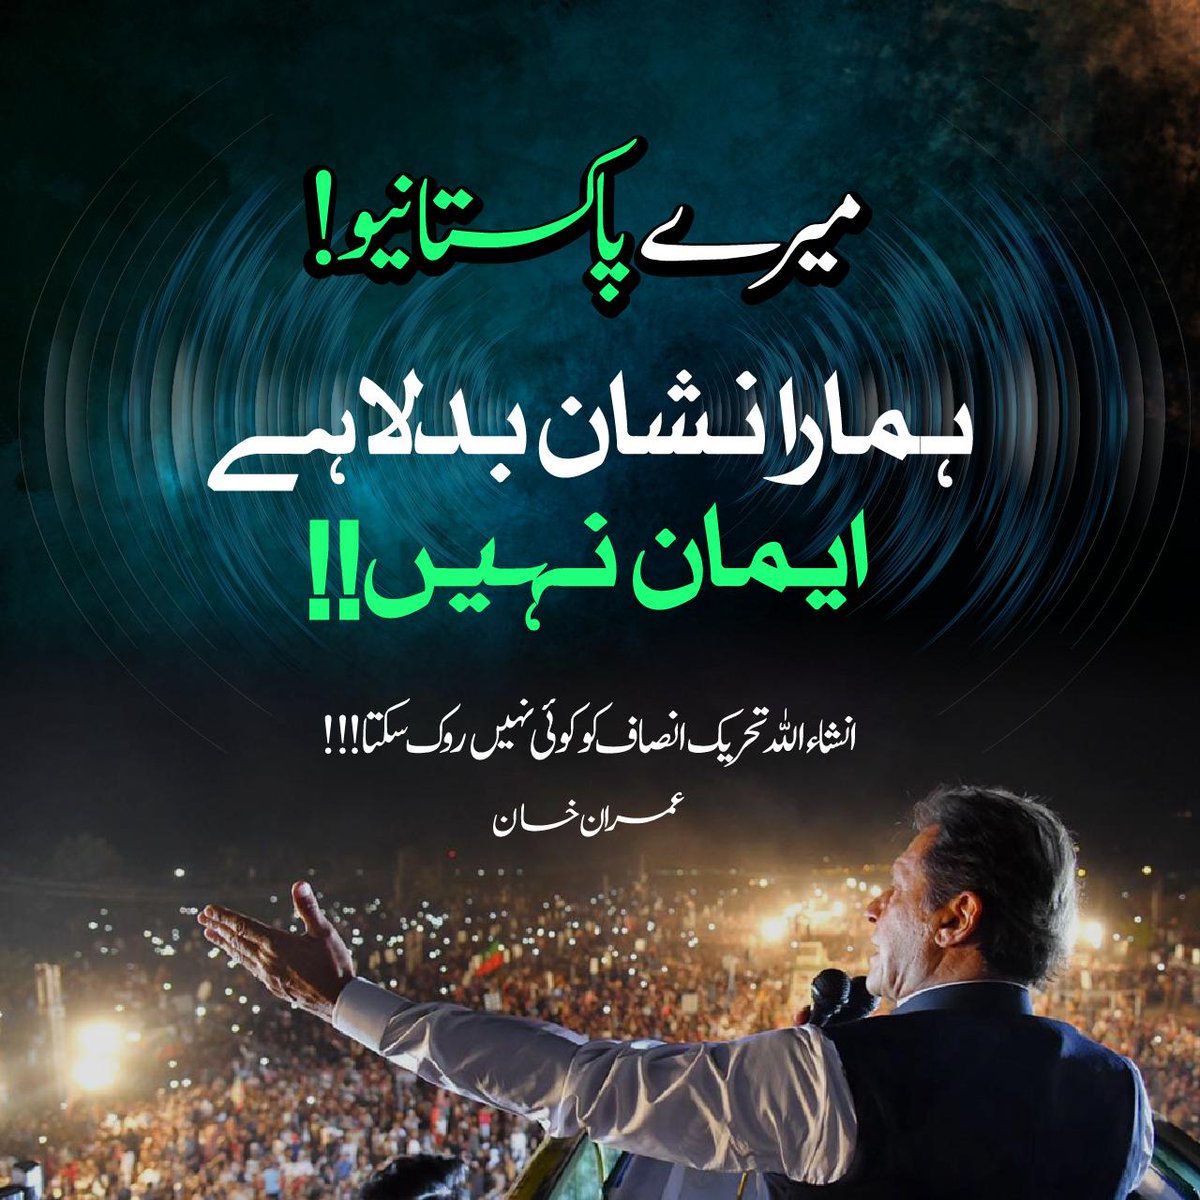 “ہمارا نشان بدلا ہے، ایمان نہیں، انشاء اللہ تحریک انصاف کو کوئی نہیں روک سکتا” - عمران خان